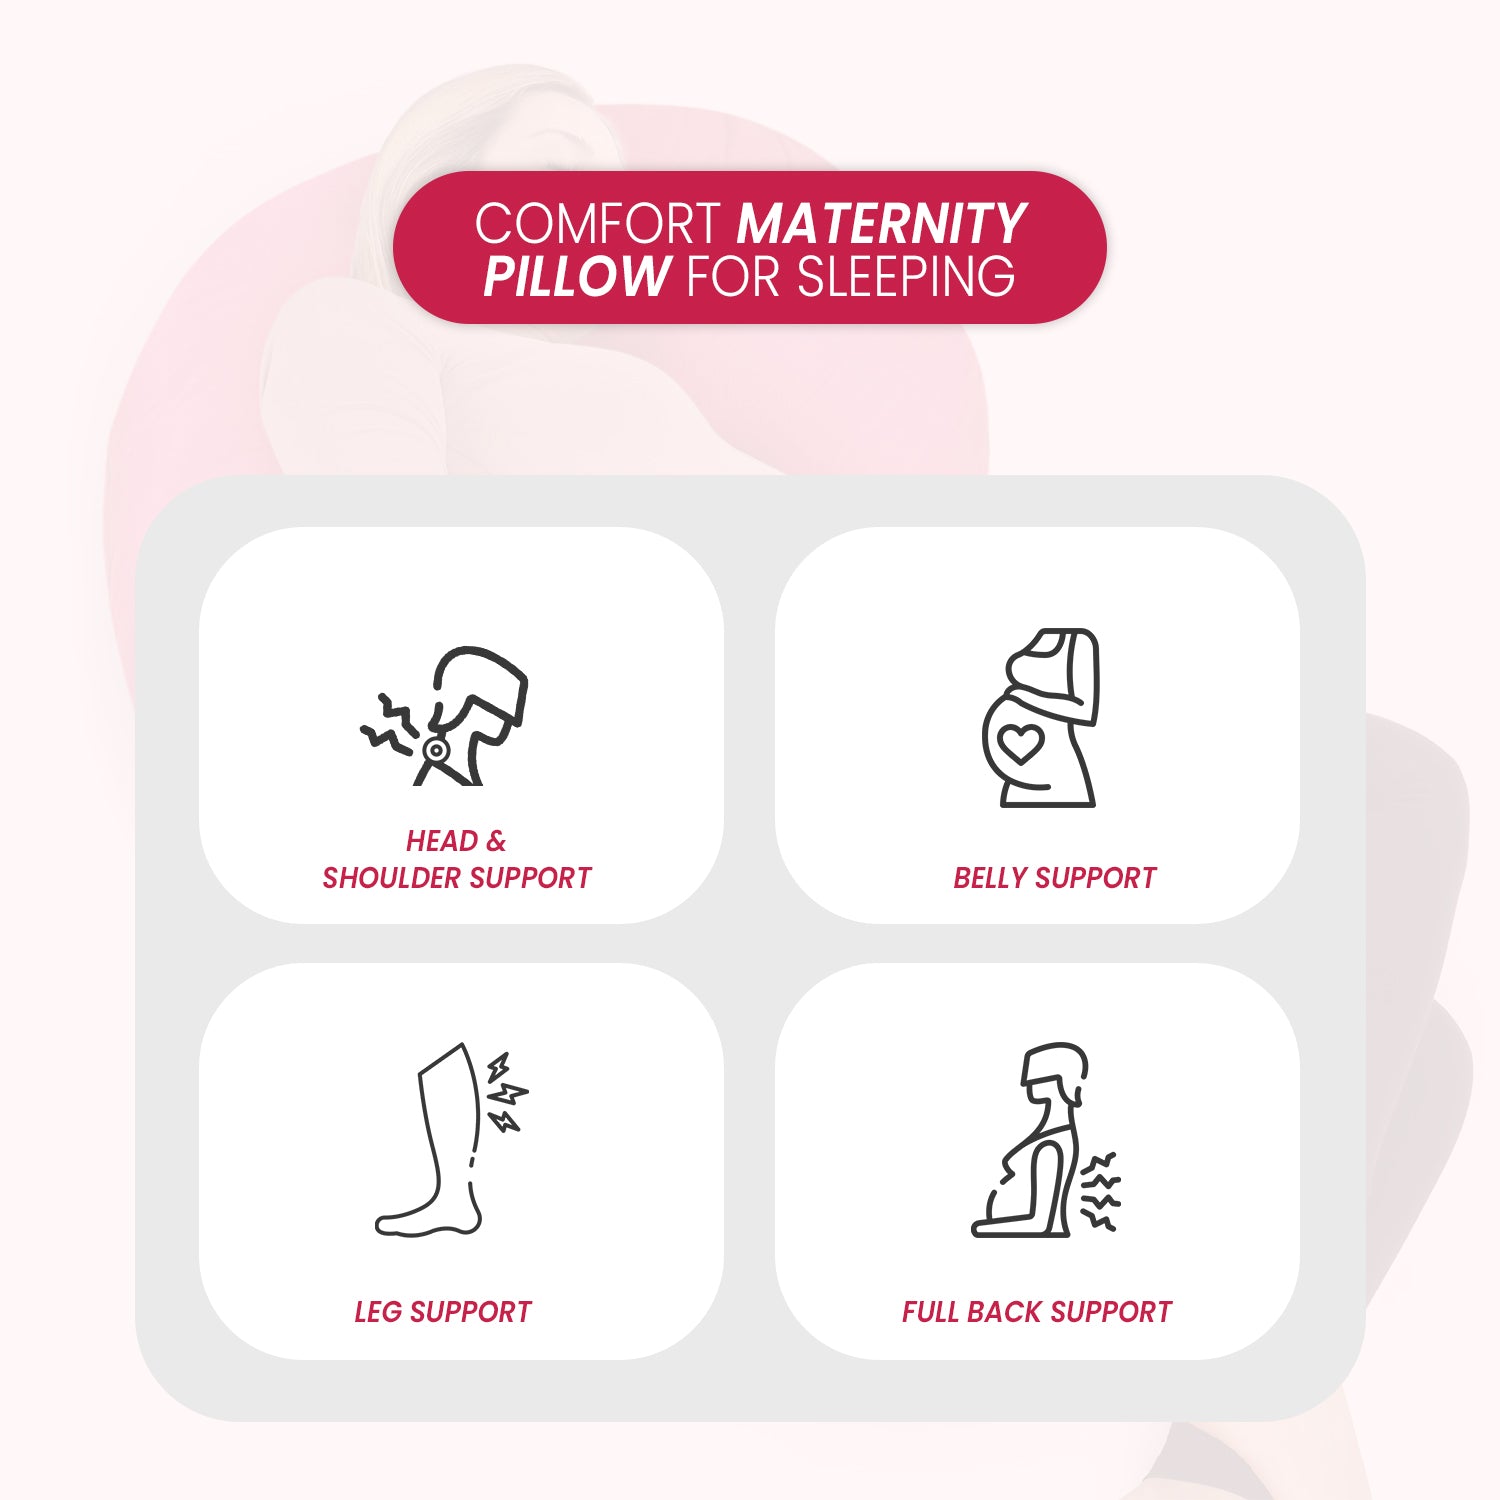 C Shaped Super-Soft Pregnancy Pillow